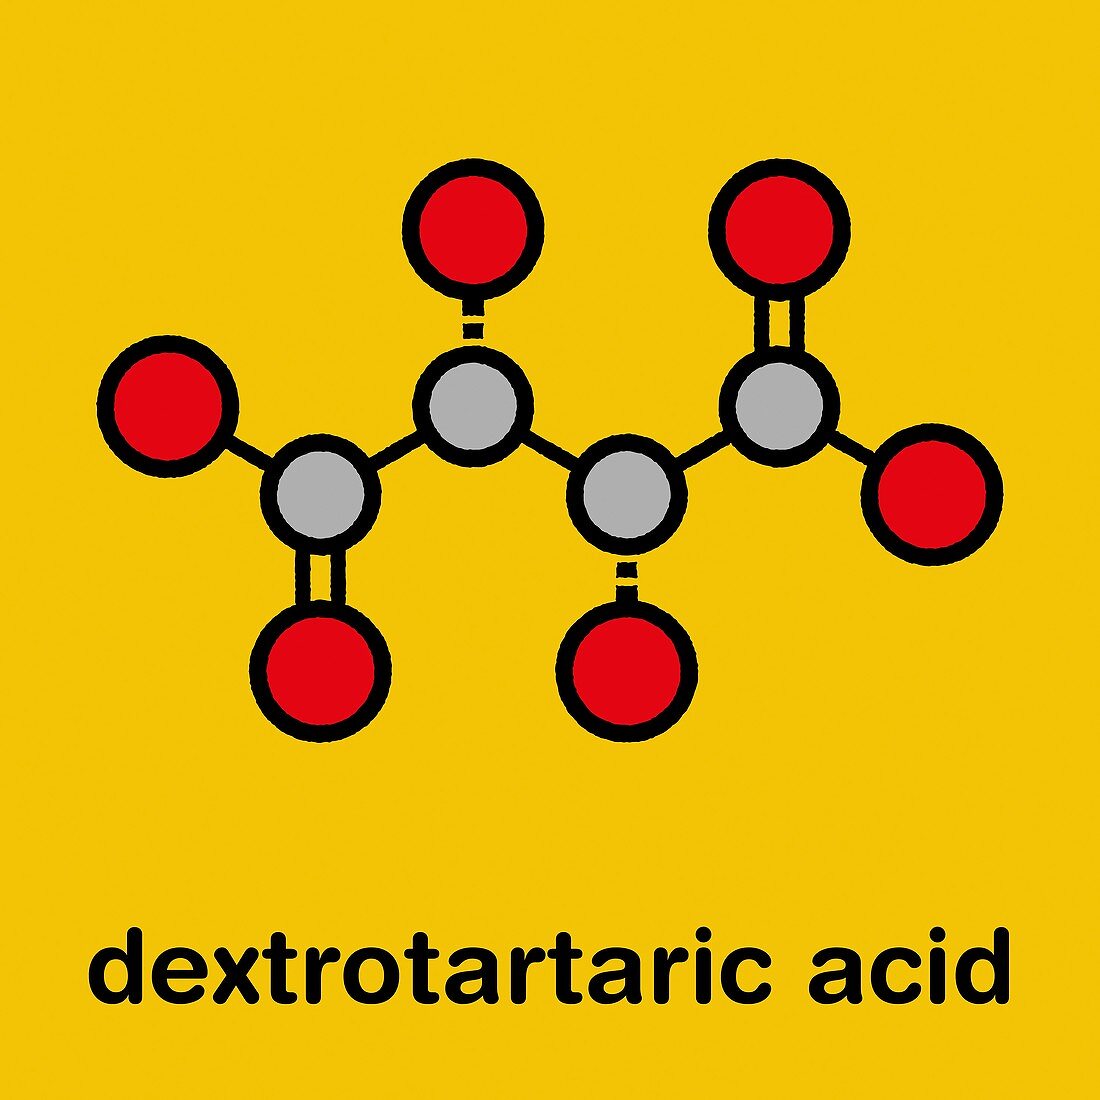 Tartaric acid molecule, illustration